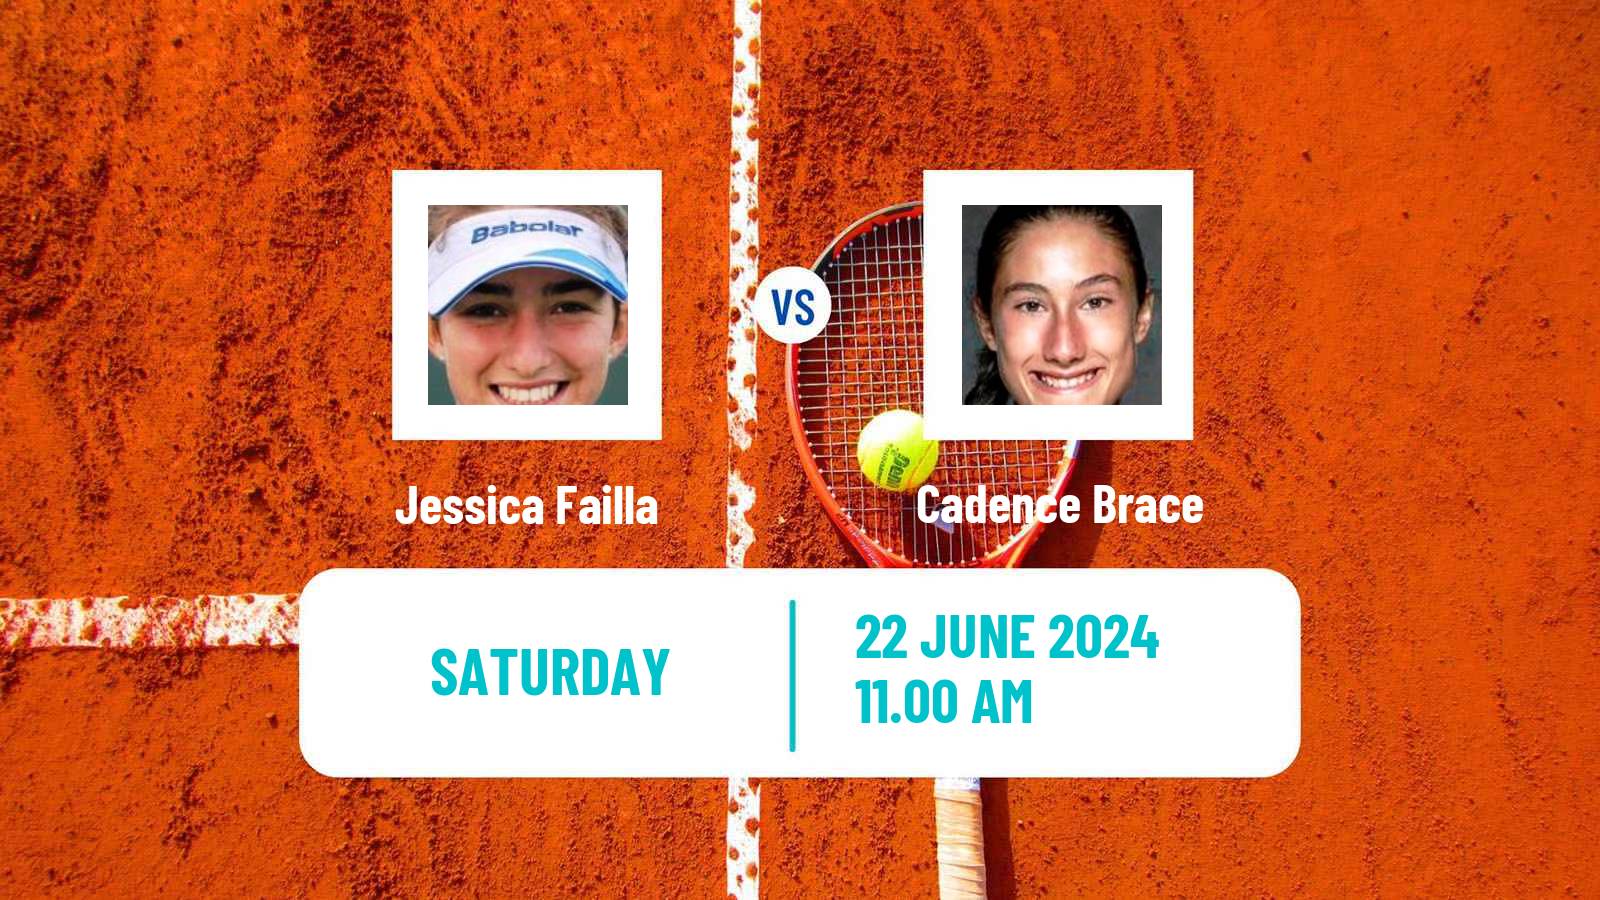 Tennis ITF W35 Wichita Ks Women Jessica Failla - Cadence Brace